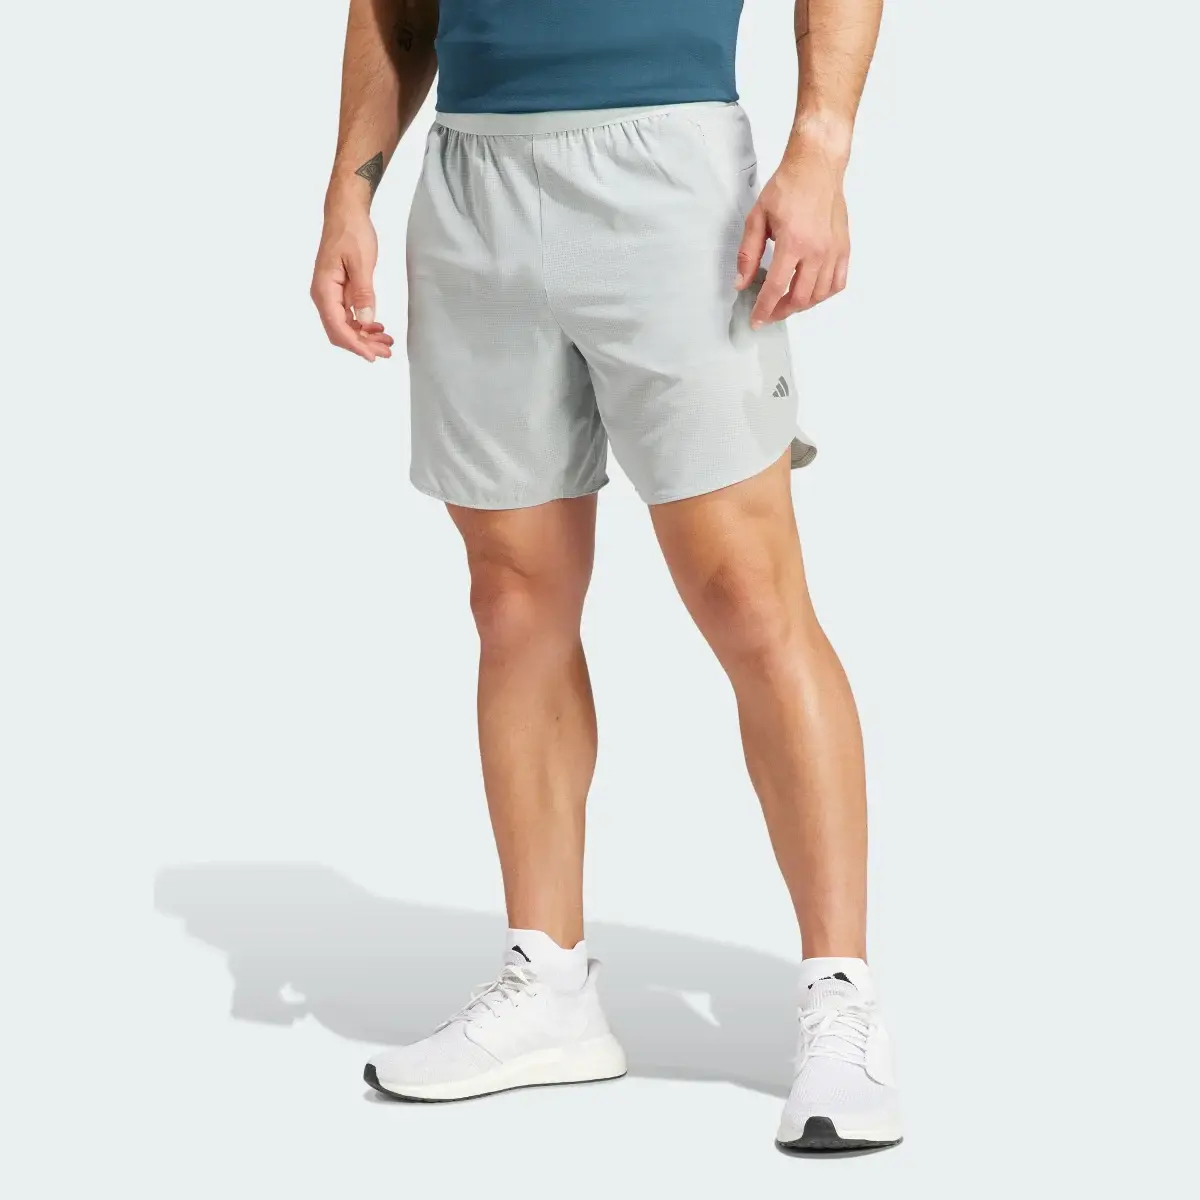 Adidas Designed for Training HIIT Training Shorts. 1